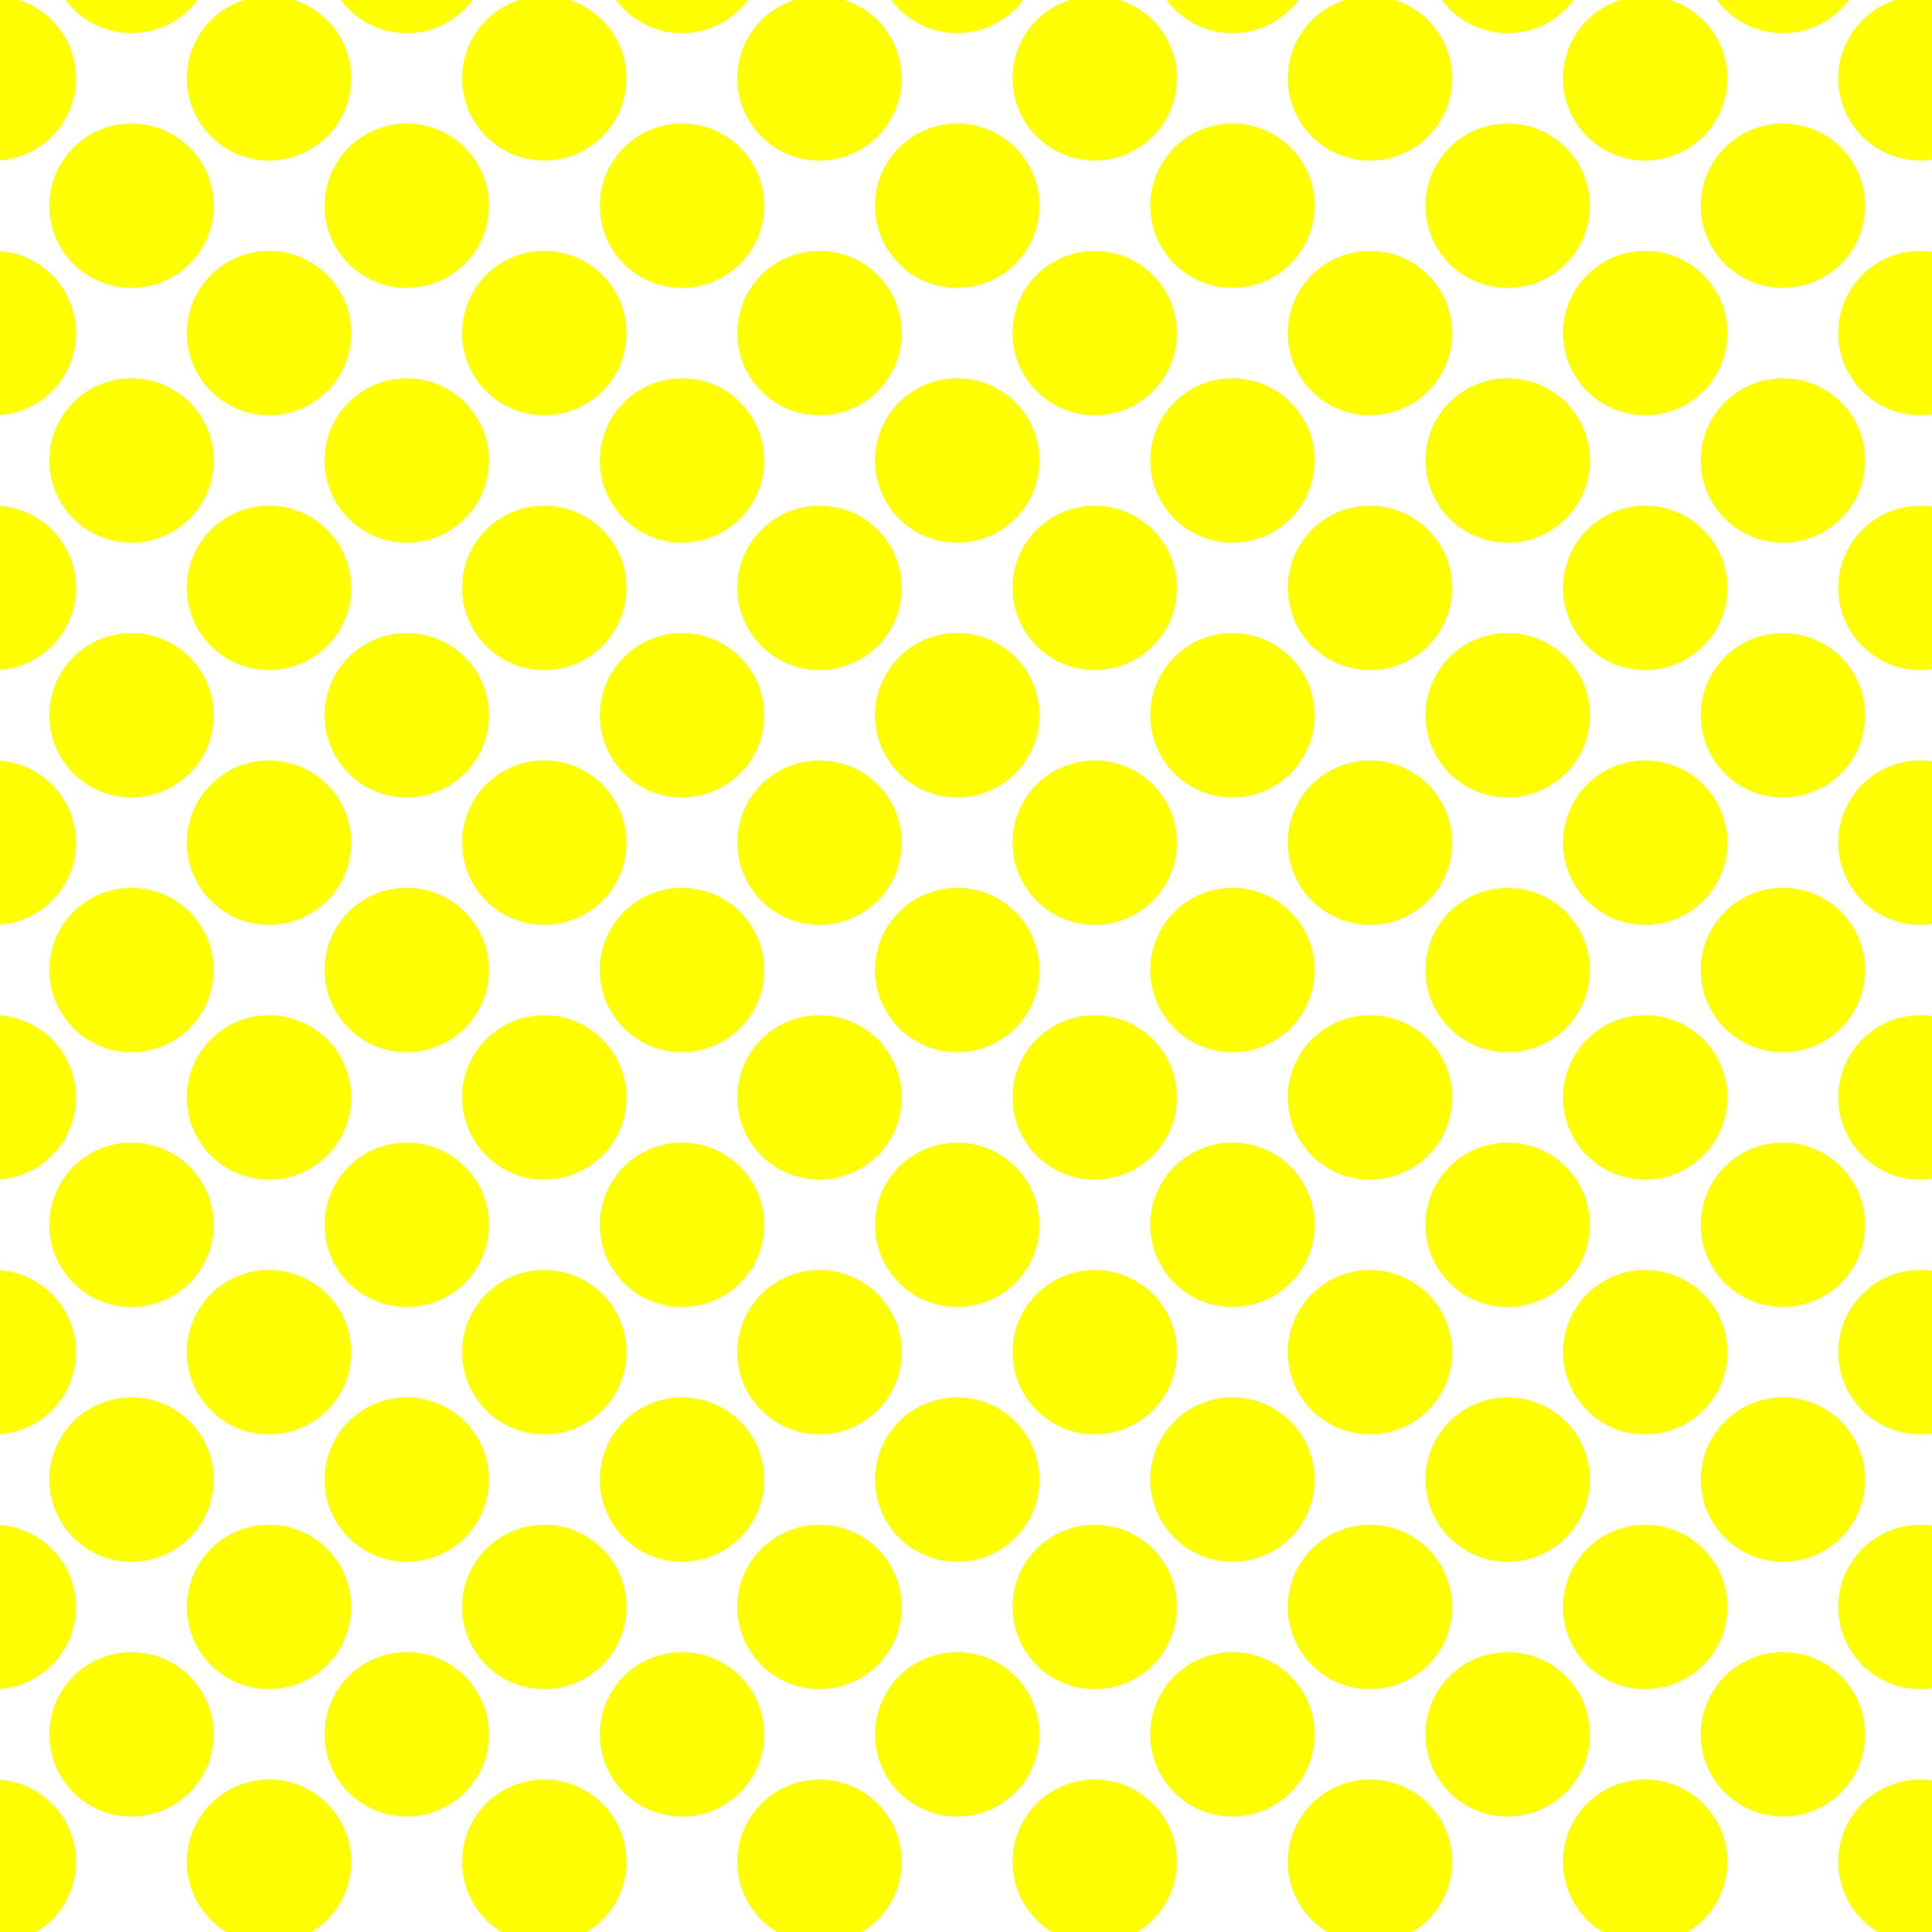 Polka Dot 1 cm Beyaz - Sülfür Sarısı Puantiye Dekoratif Baskı Kumaş